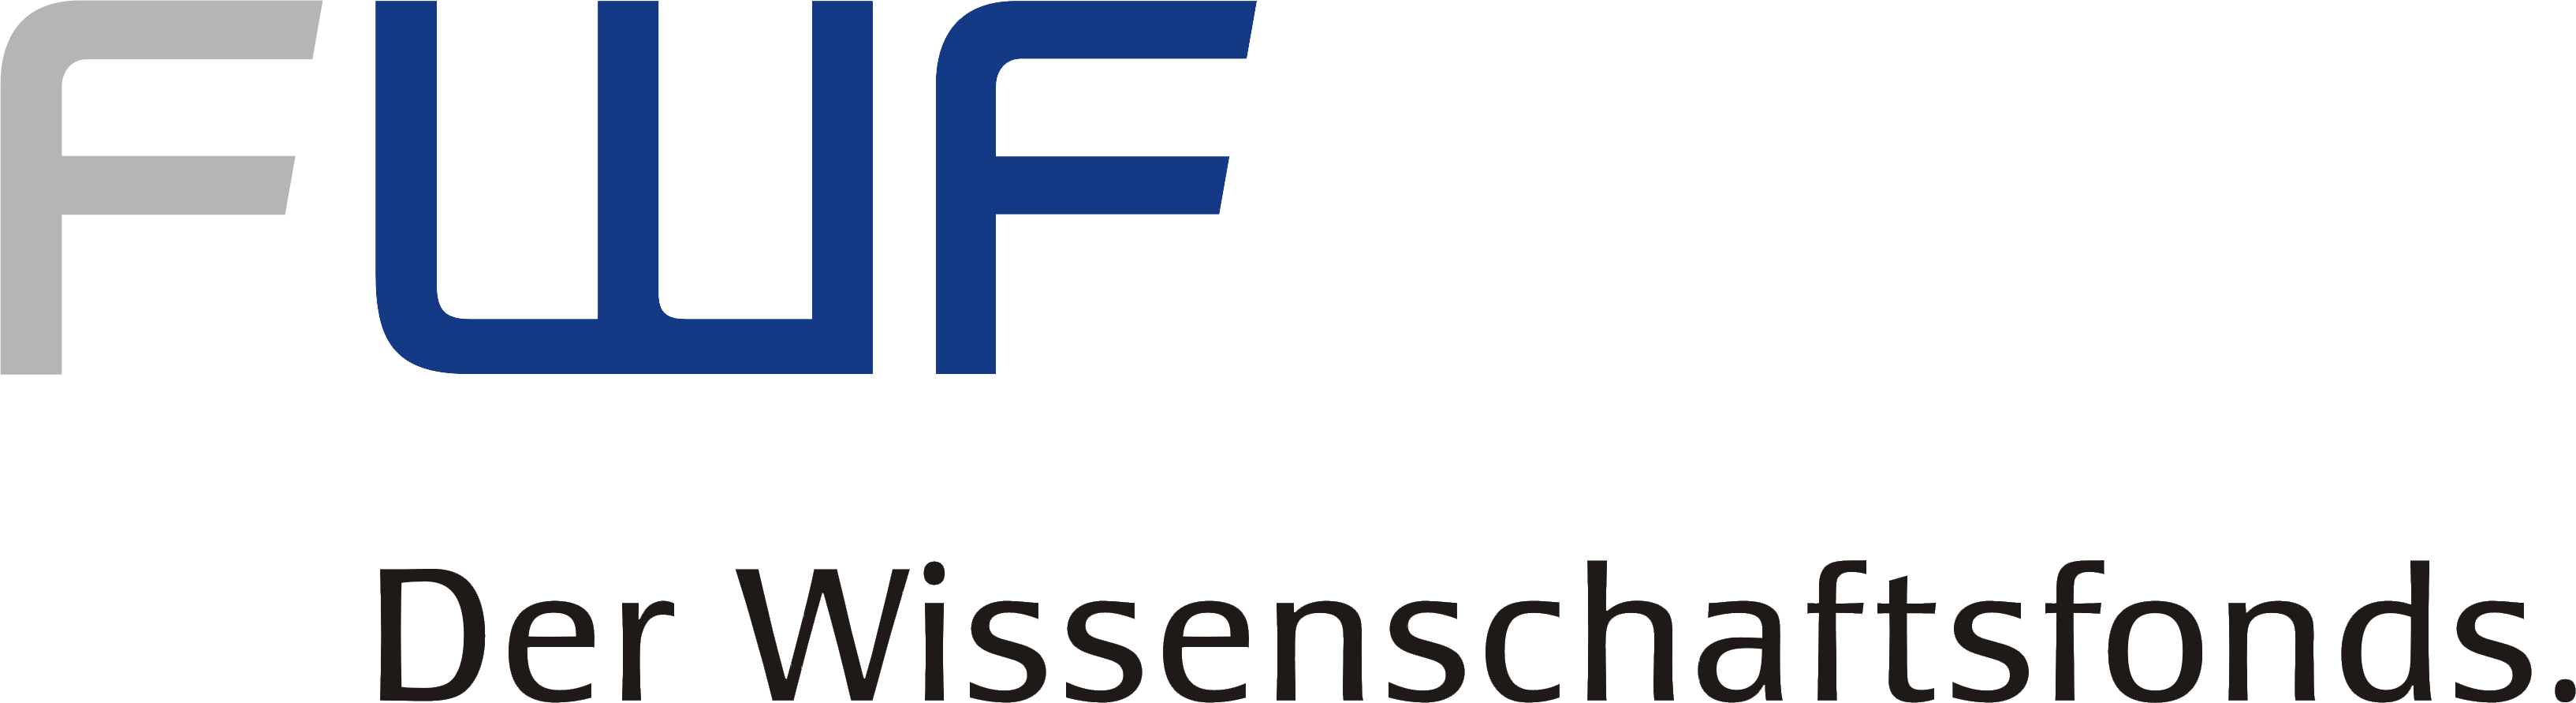 FWF - Der Wissenschaftsfonds